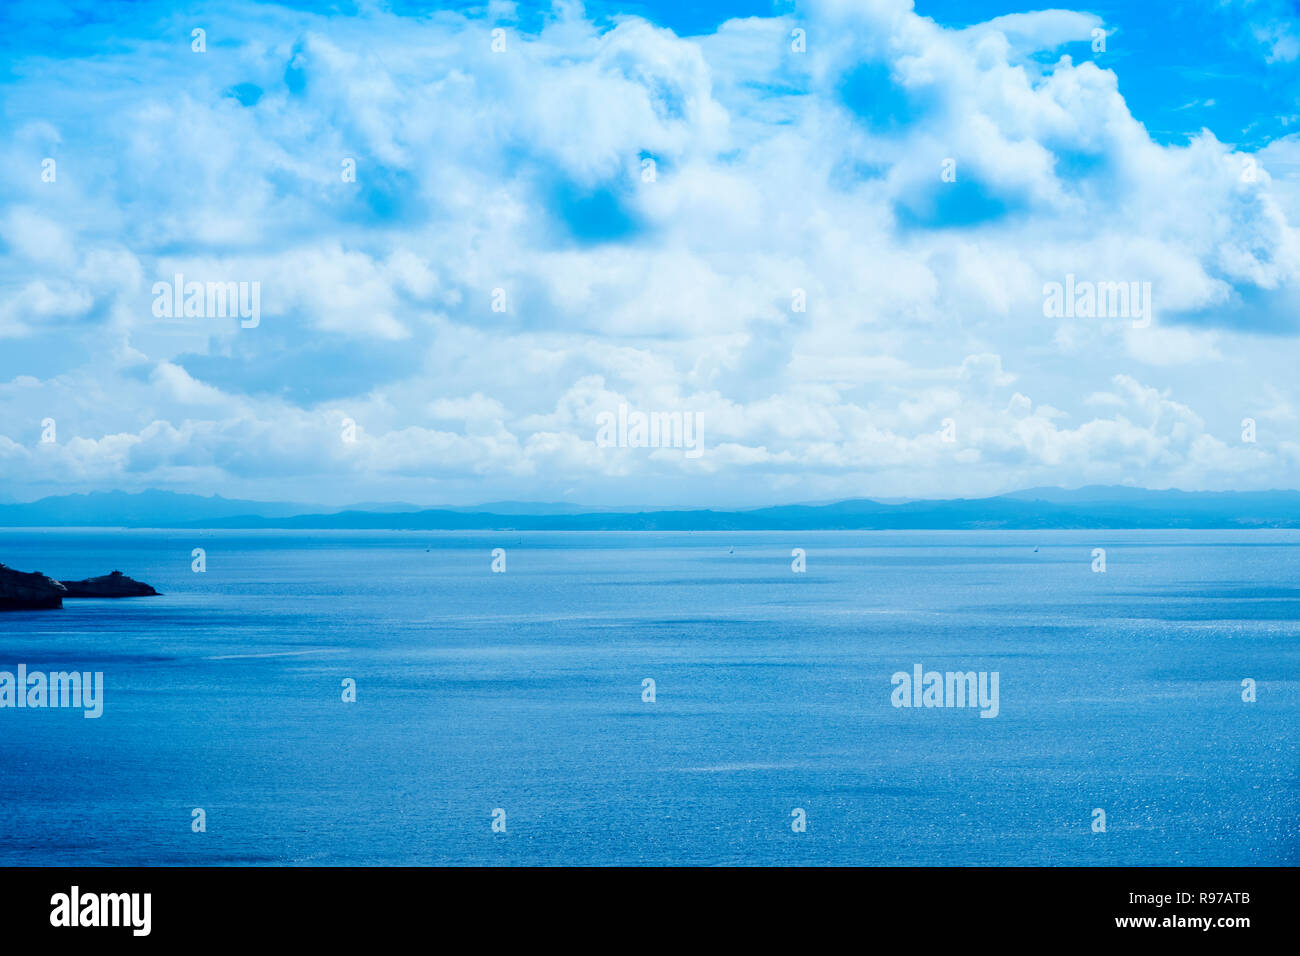 Una vista del mare Mediterraneo presso le Bocche di Bonifacio, da Bonifacio in Corsica, Francia, evidenziando i francesi Isole Lavezzi e l'italiano Foto Stock